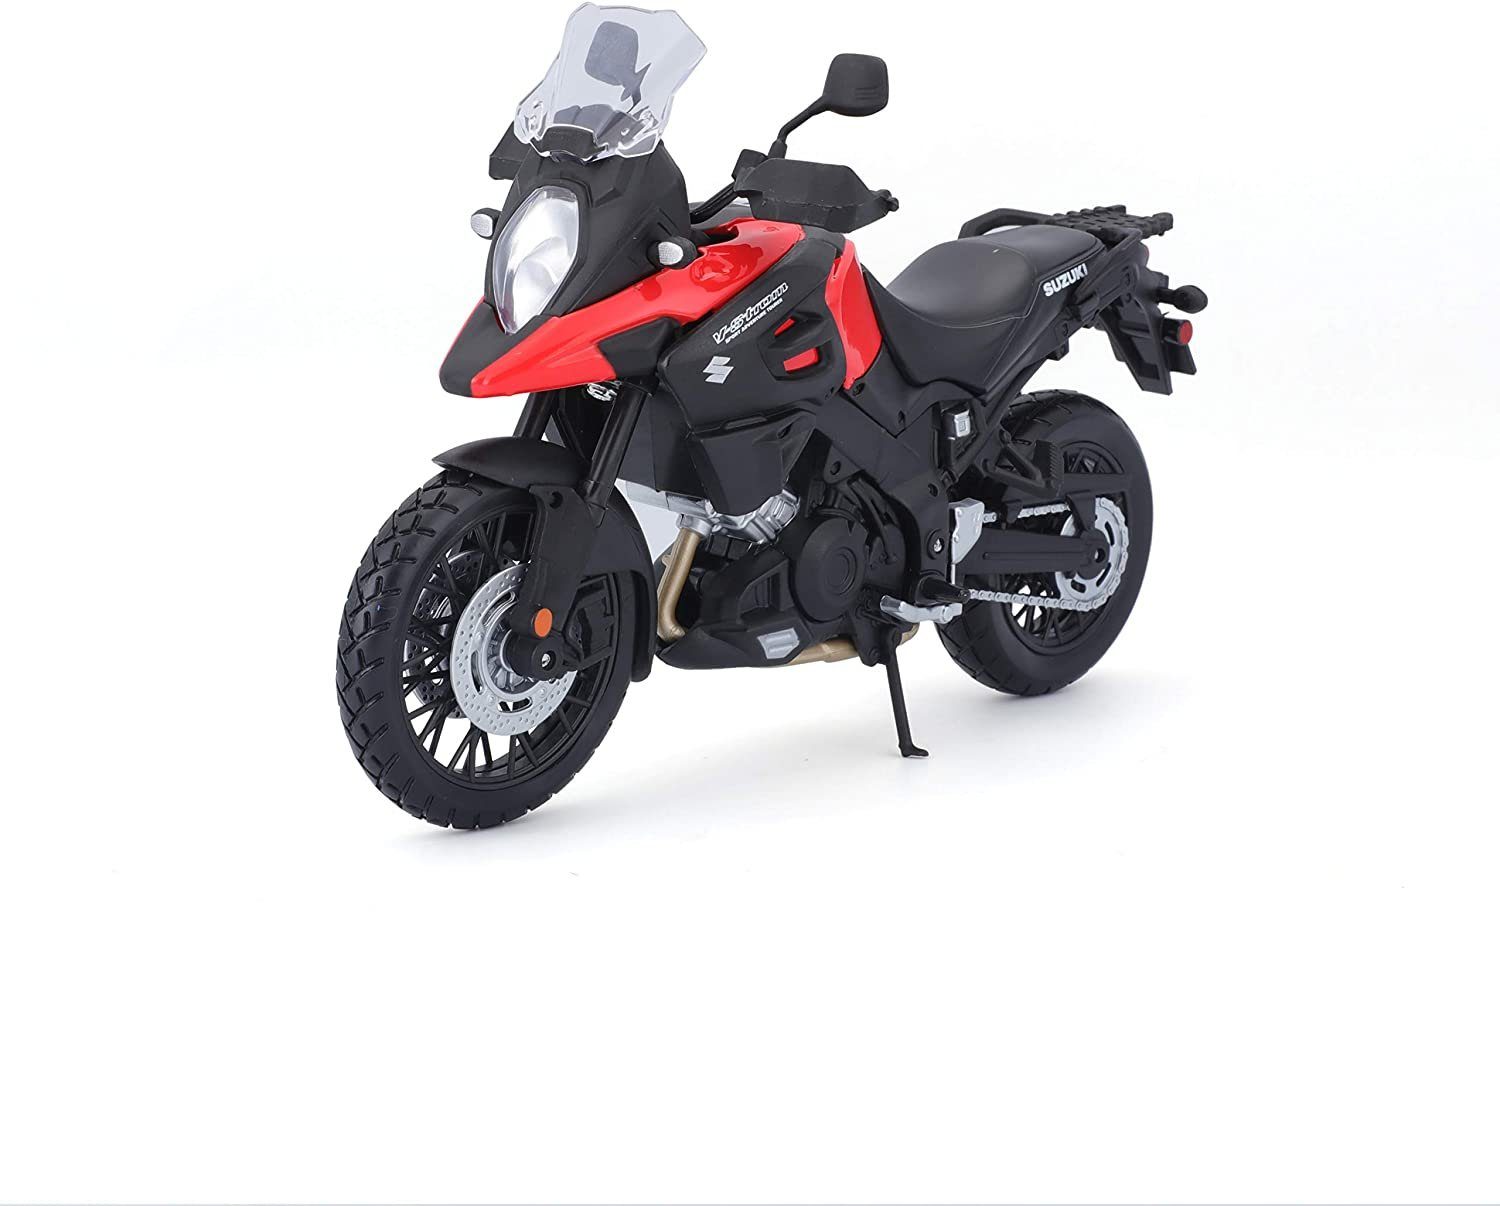 Maisto® Modellmotorrad Suzuki V-Strom (schwarz-rot, Maßstab 1:12), Maßstab 1:12, detailliertes Modell